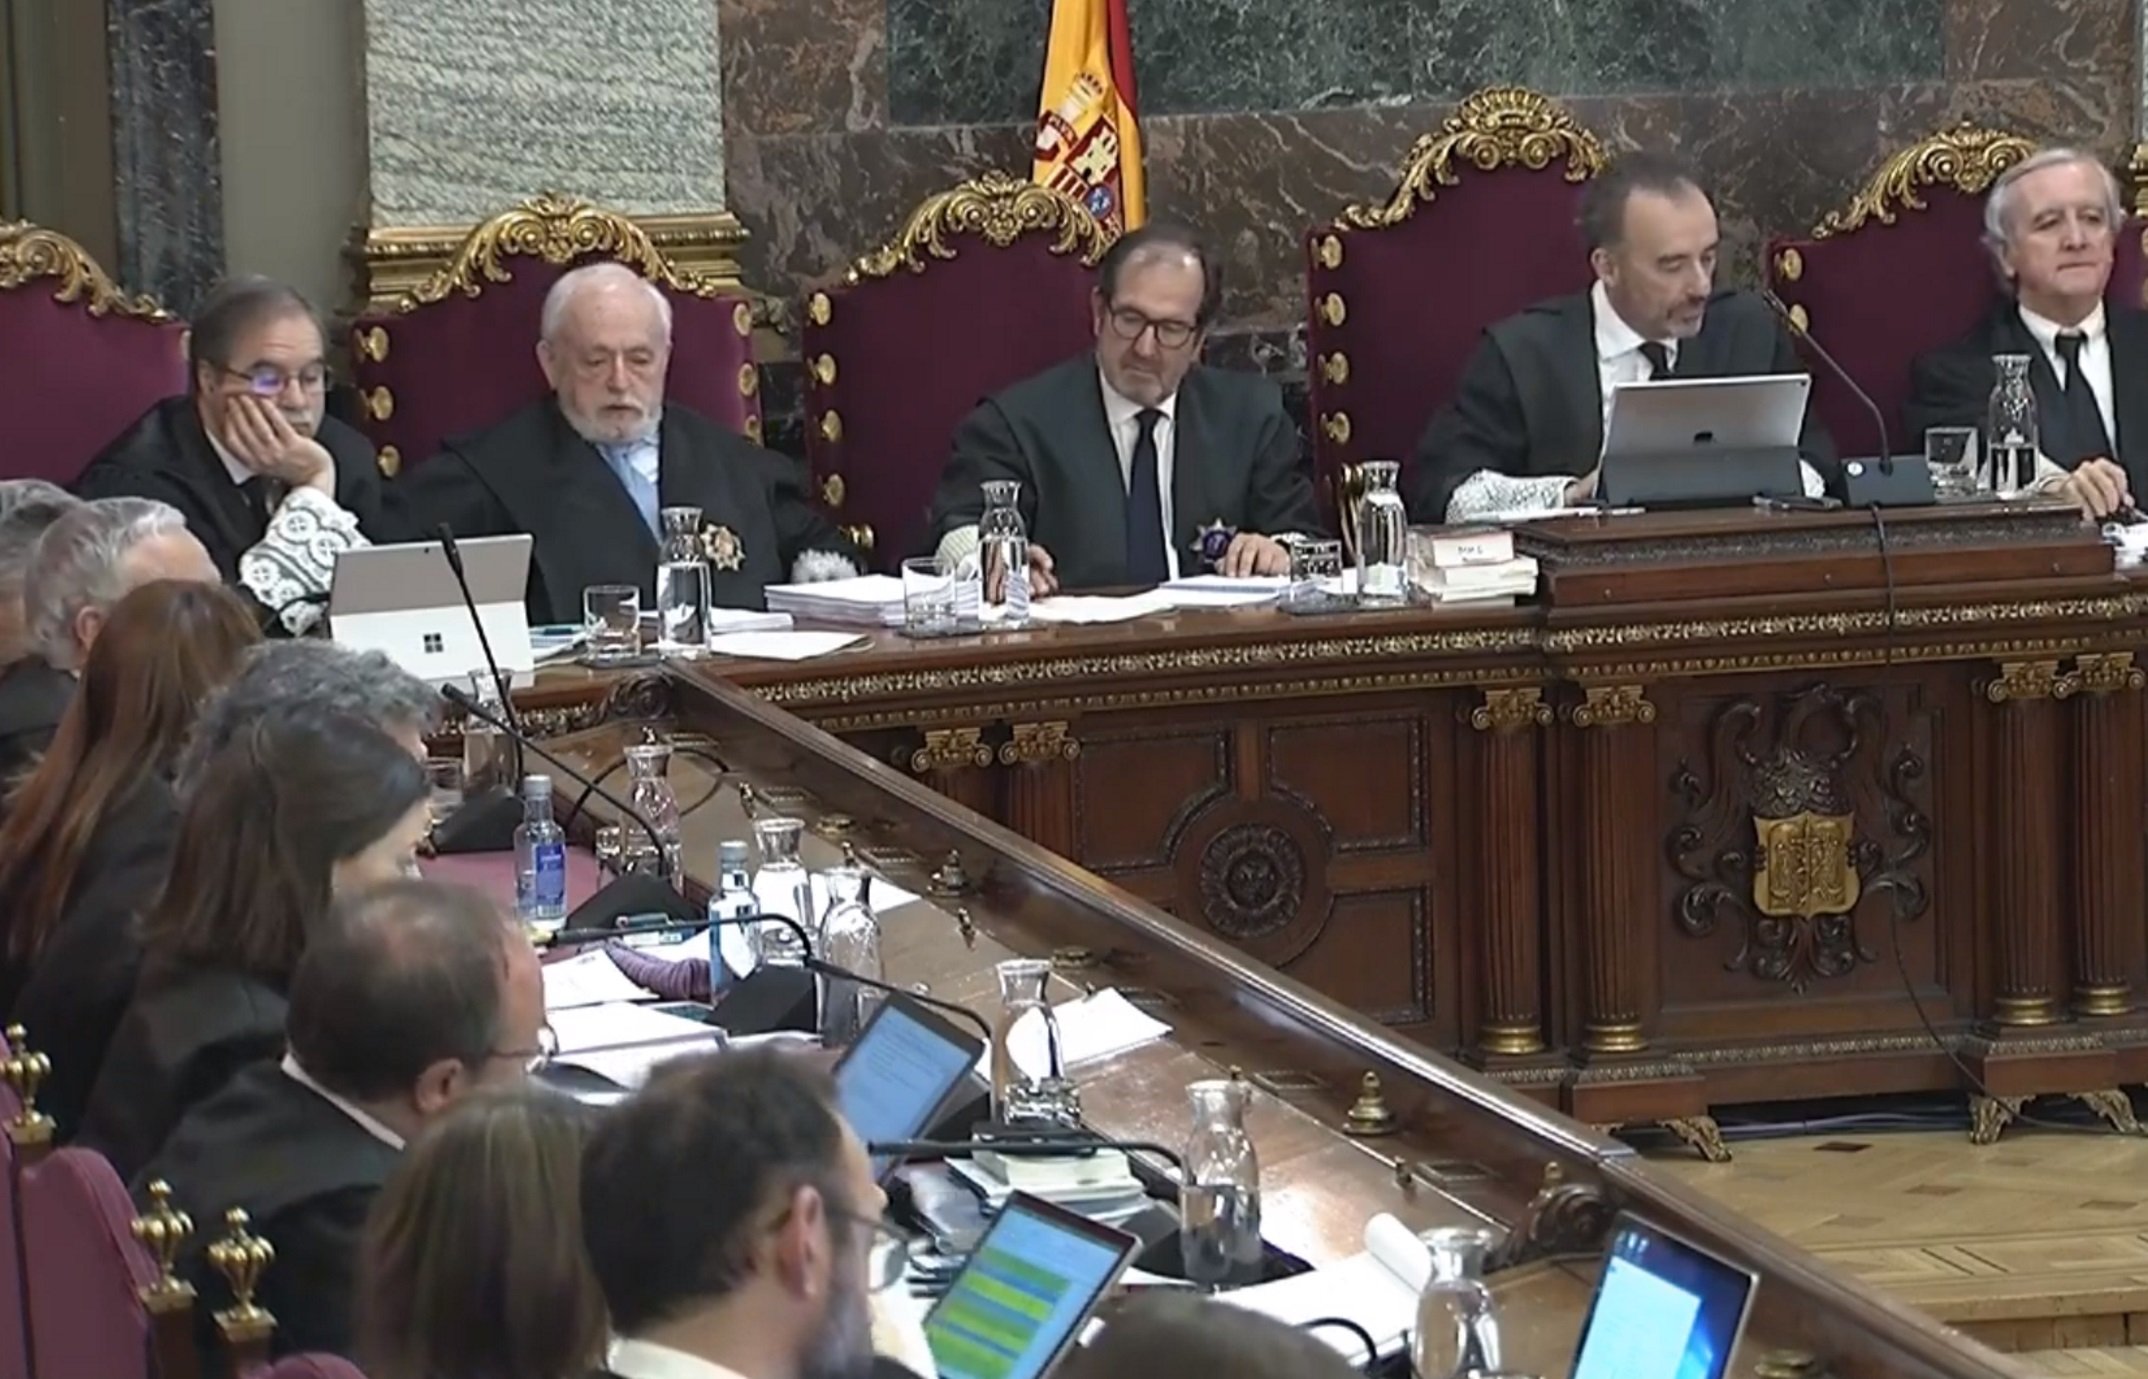 Policies espanyols contraposen "encaputxats" i manifestants "estètics i en actitud contemplativa"